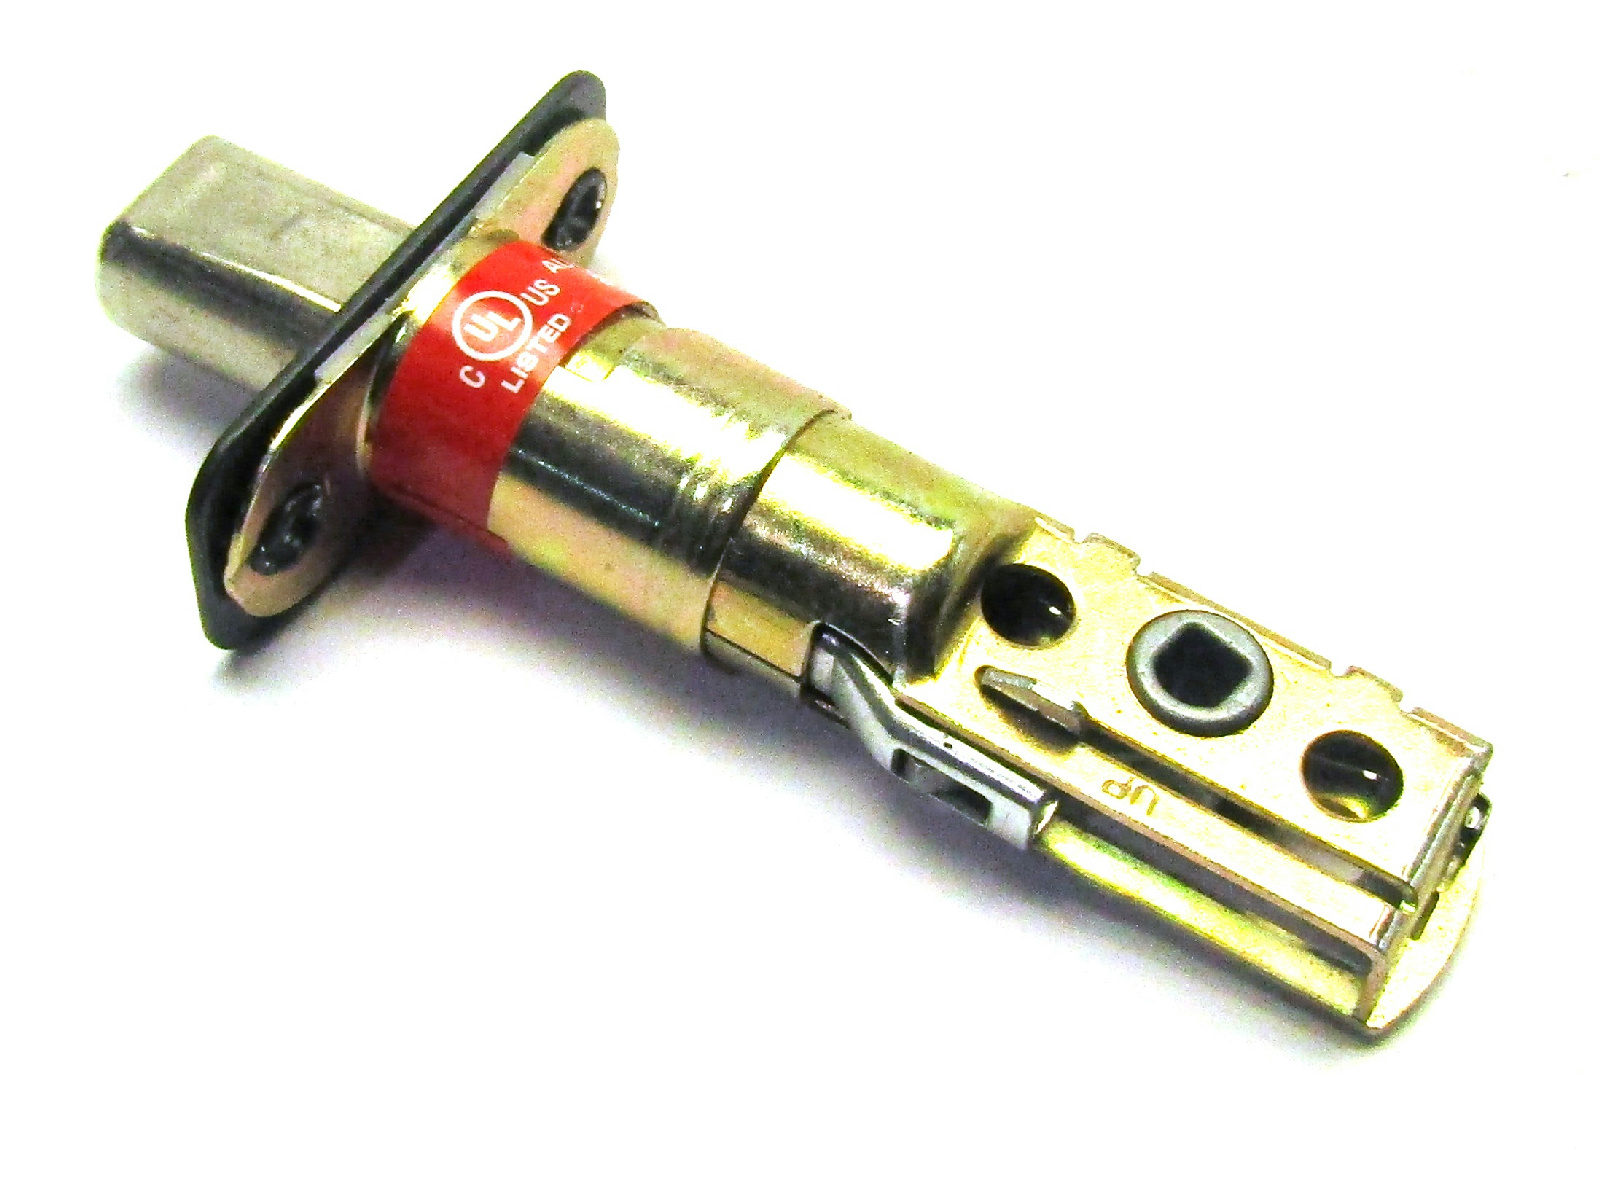 38x Assorted Kwikset Deadbolt Door Lock Accessories & Parts 450191 Key Locks eBay